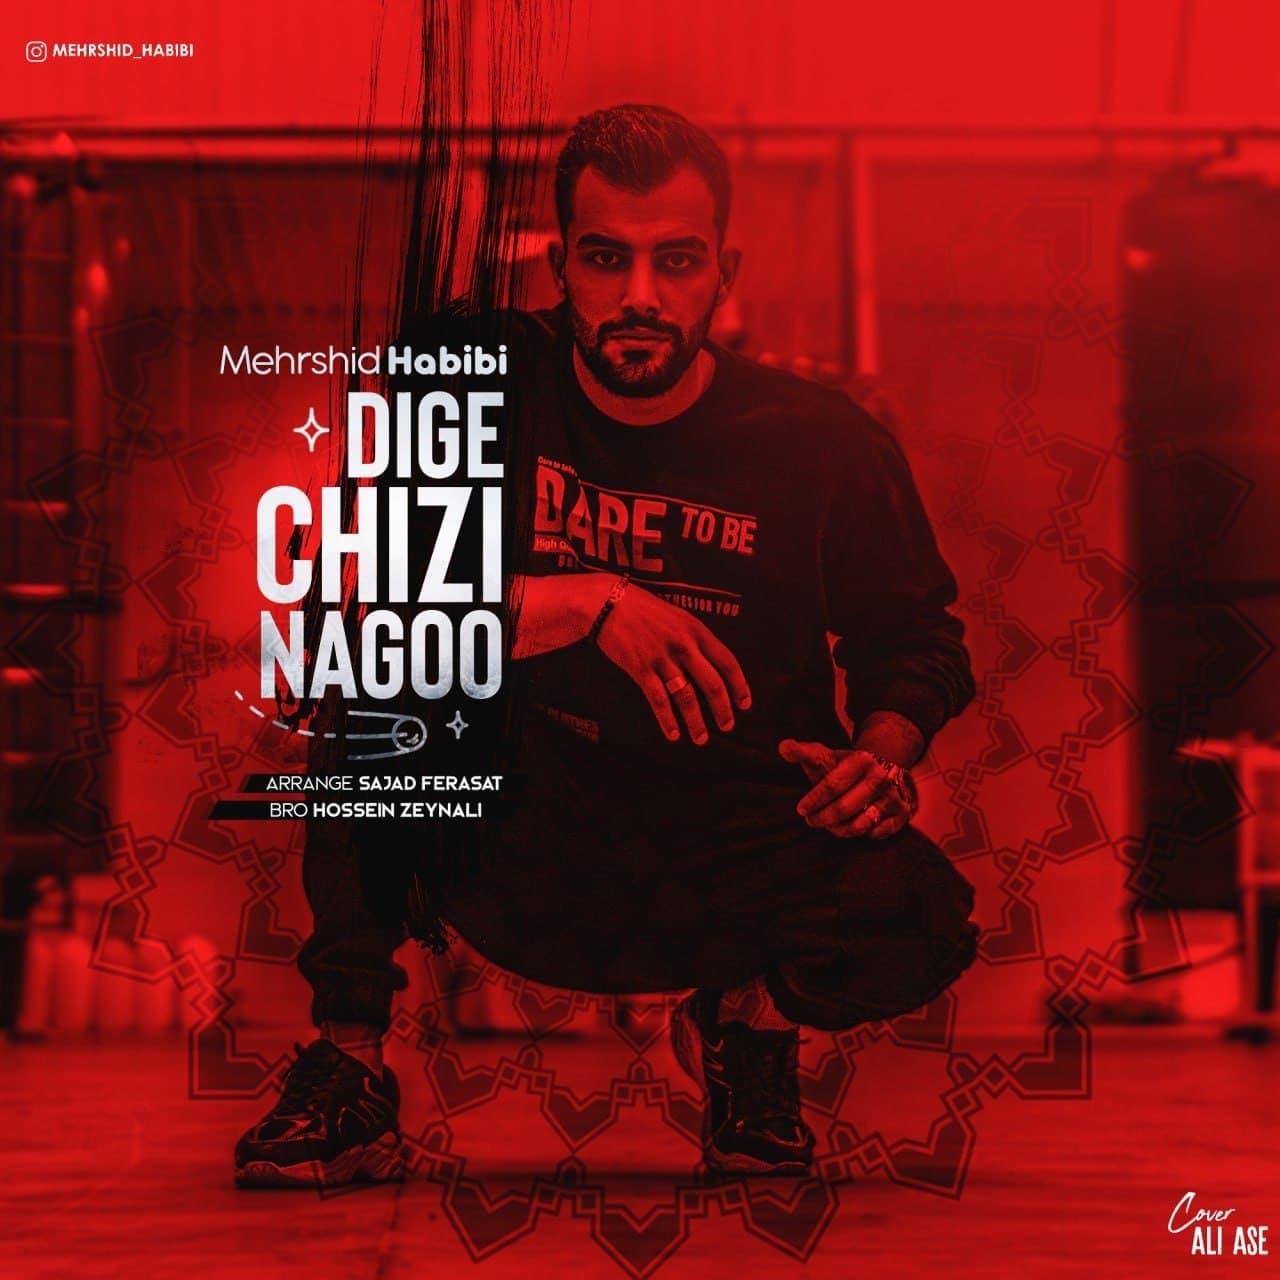  دانلود آهنگ جدید مهرشید حبیبی - دیگه چیزی نگو | Download New Music By Mehrshid Habibi  - Dige Chizi Nagoo